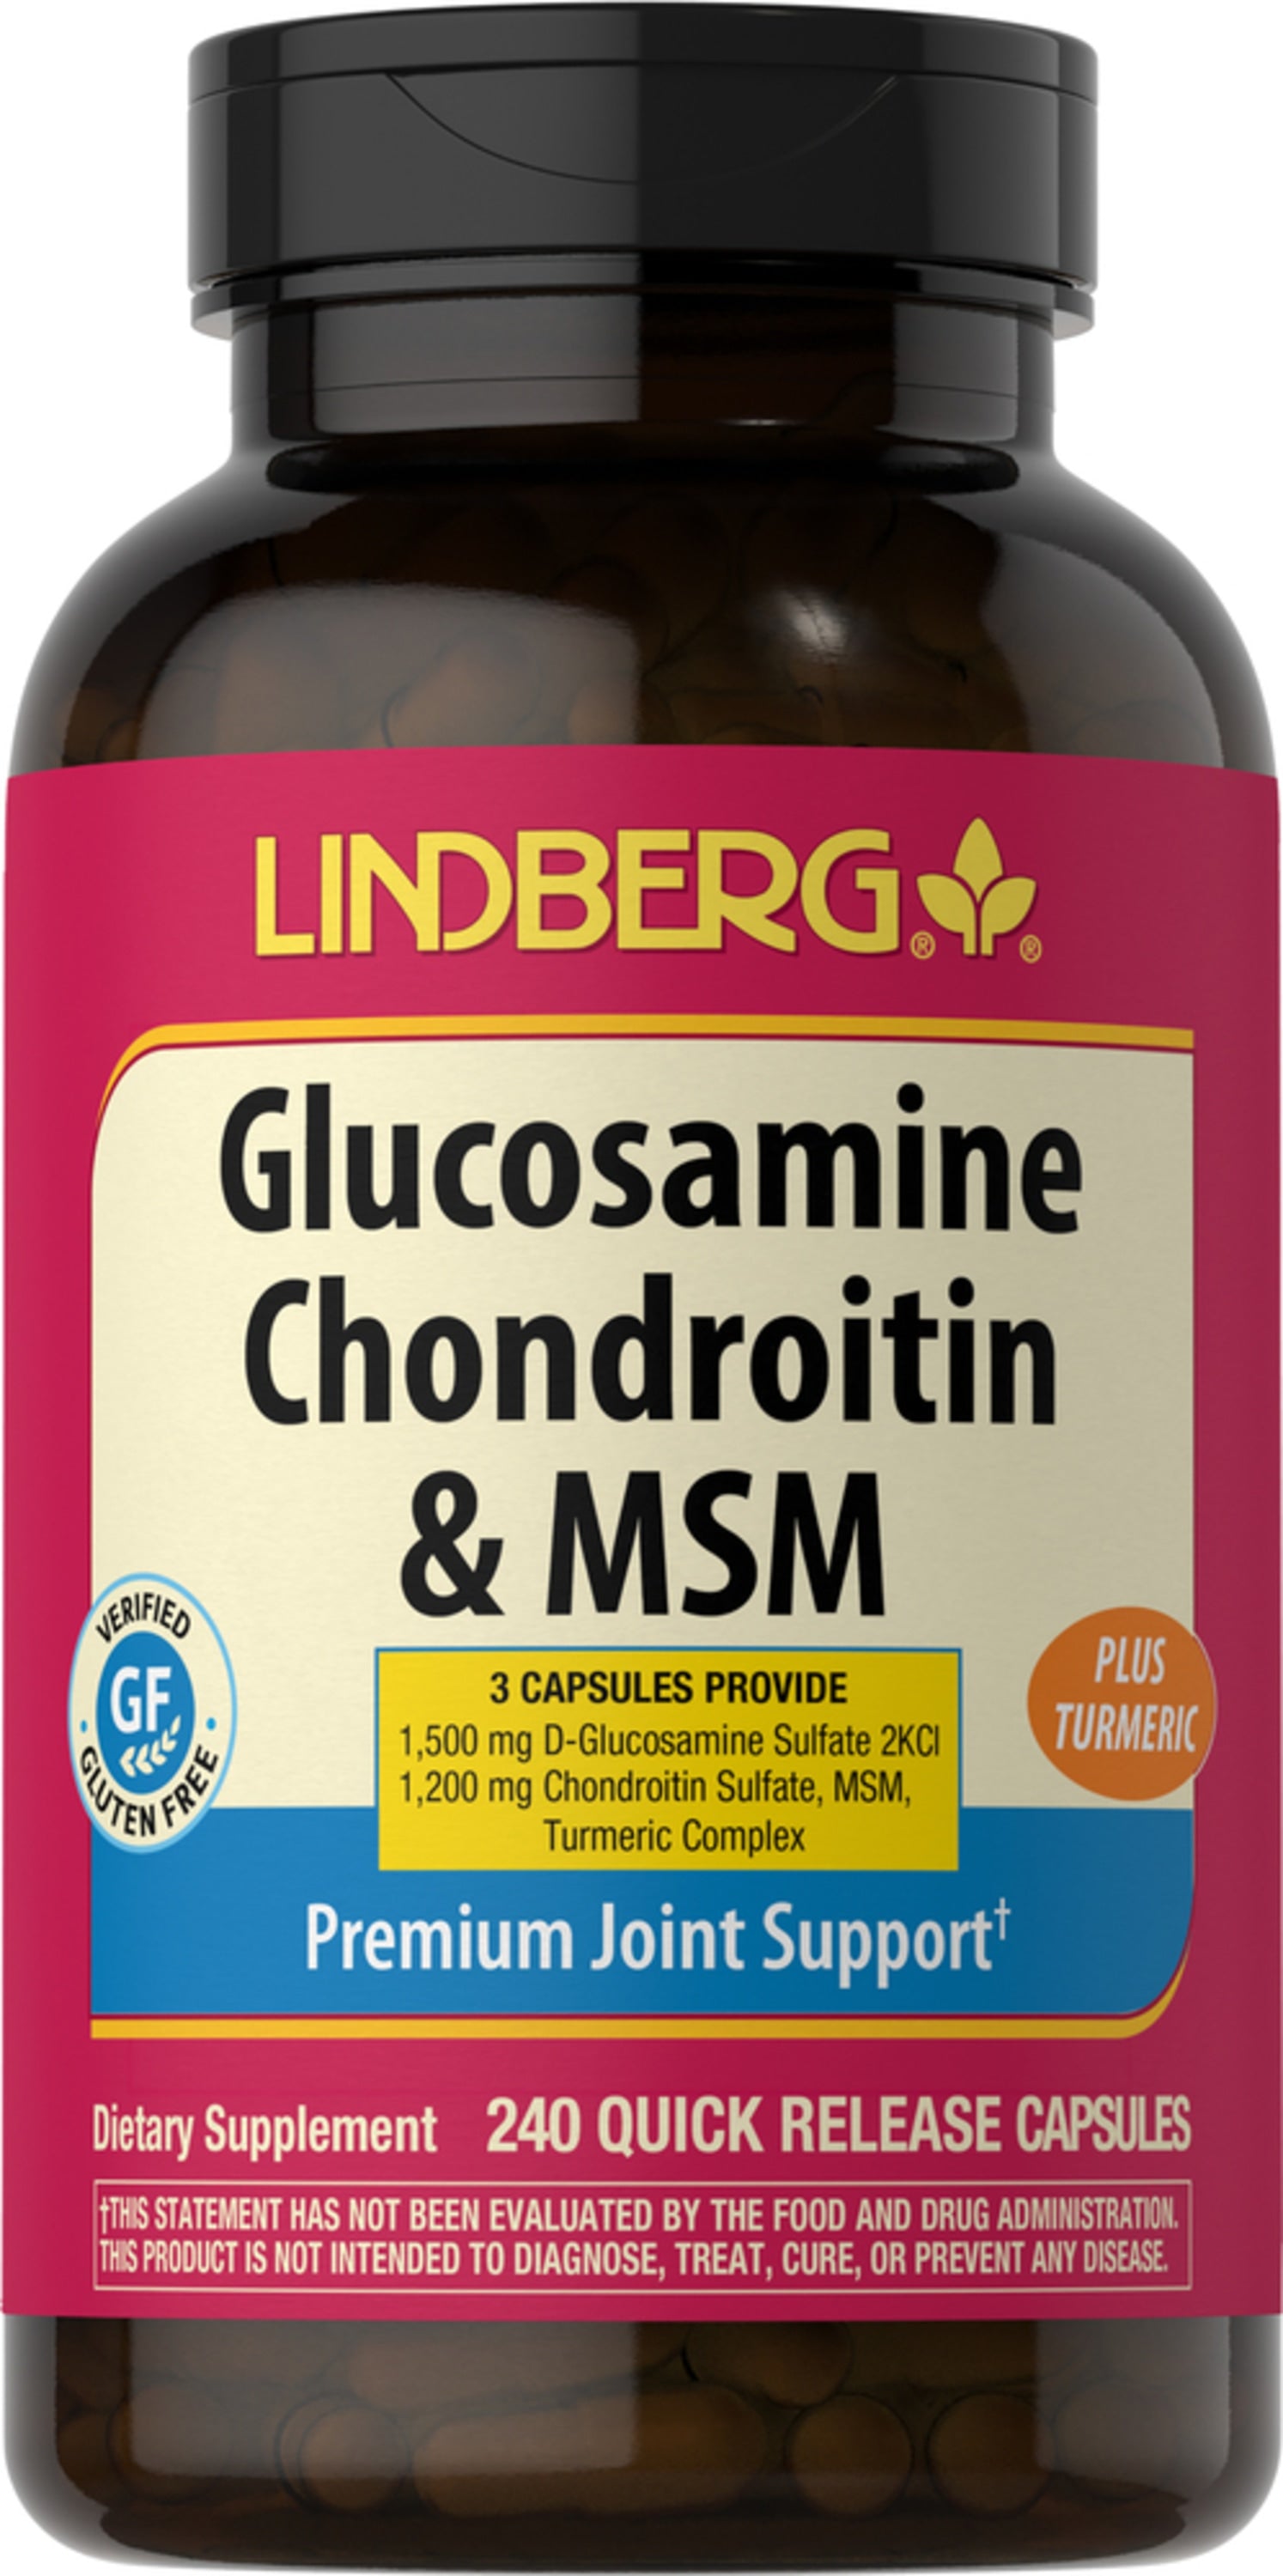 Glucosamine Chondroitin & MSM Plus Turmeric, 240 Quick Release Capsules